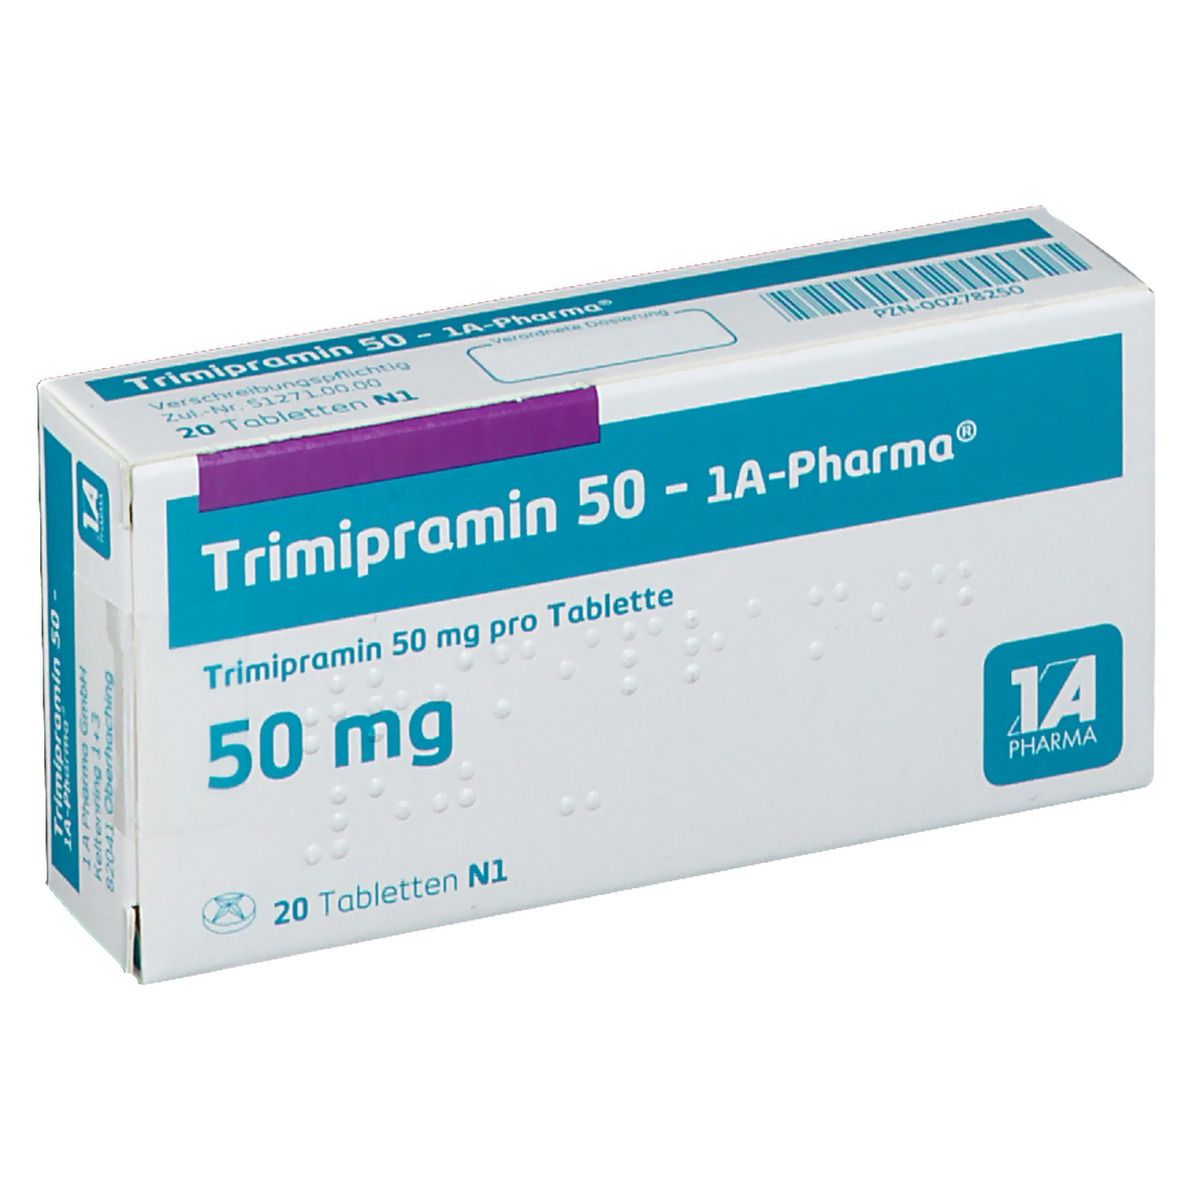 Trimipramin 50 1A Pharma®